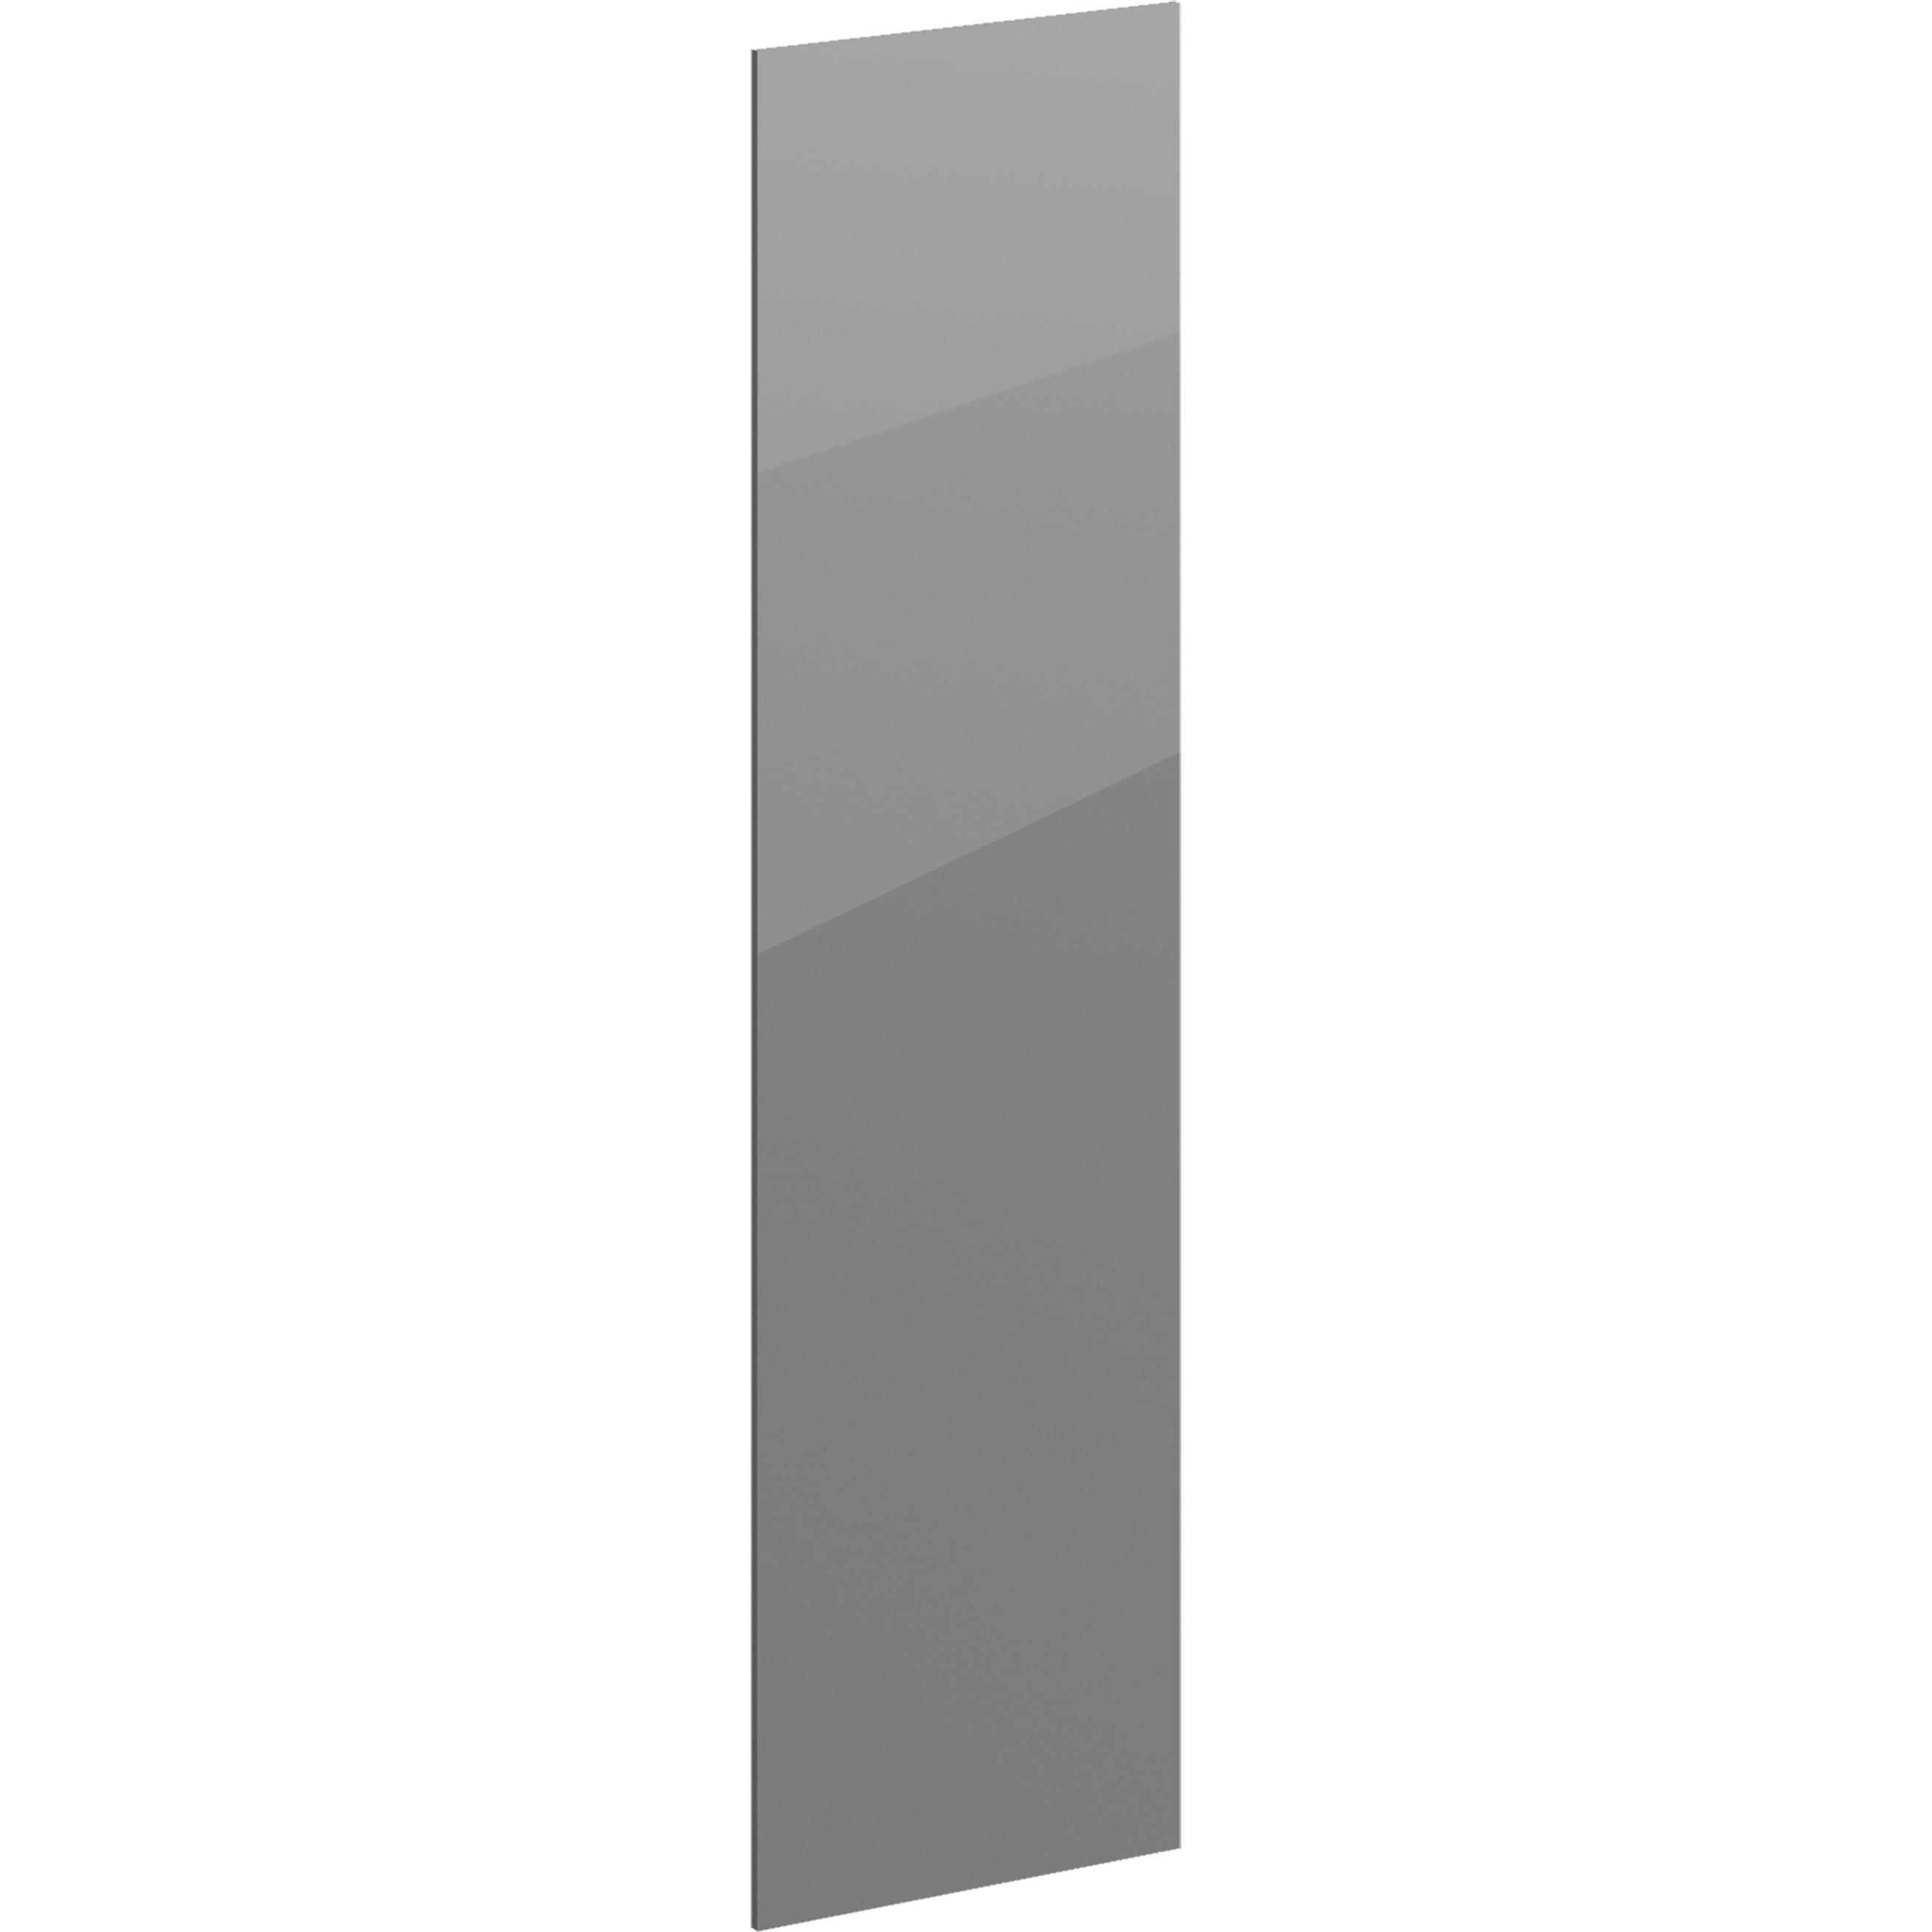 Дверь для шкафа Лион 59.4x225.8x1.6 см ЛДСП цвет графит